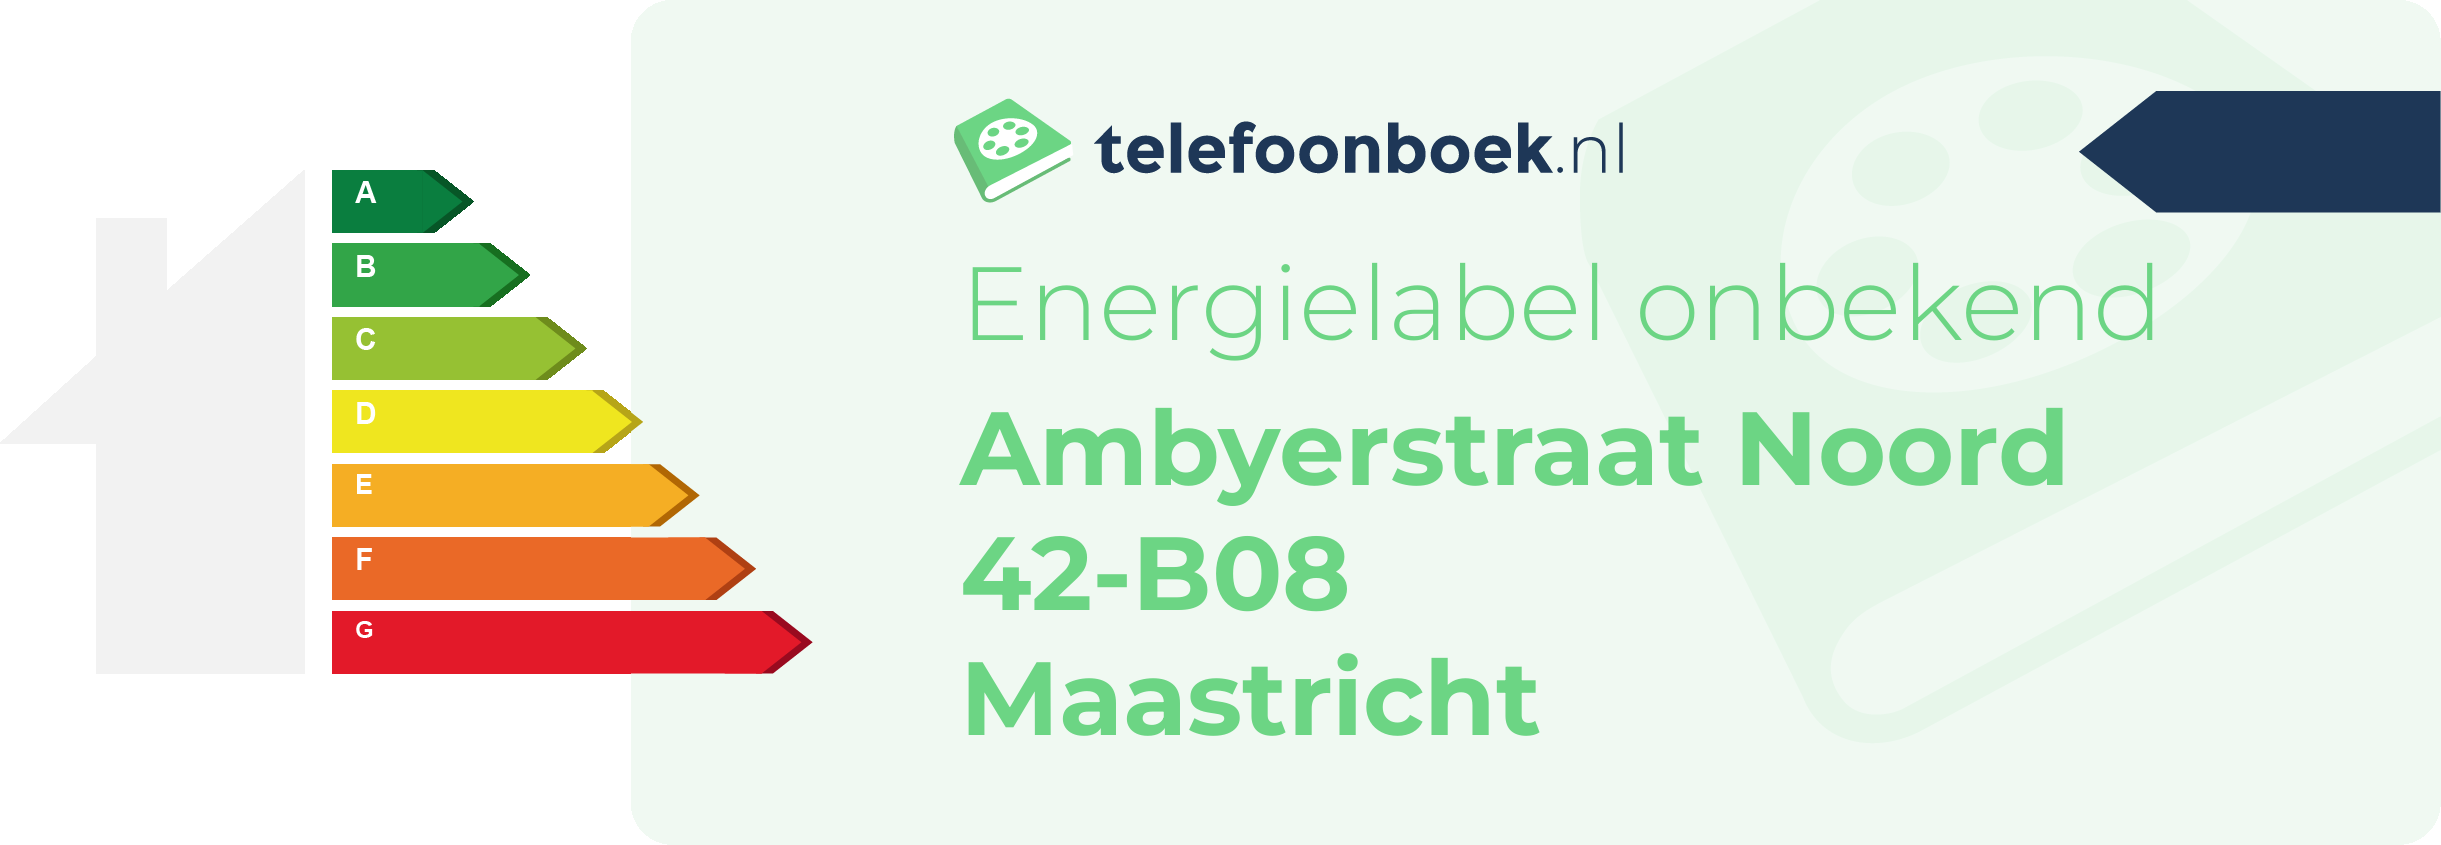 Energielabel Ambyerstraat Noord 42-B08 Maastricht